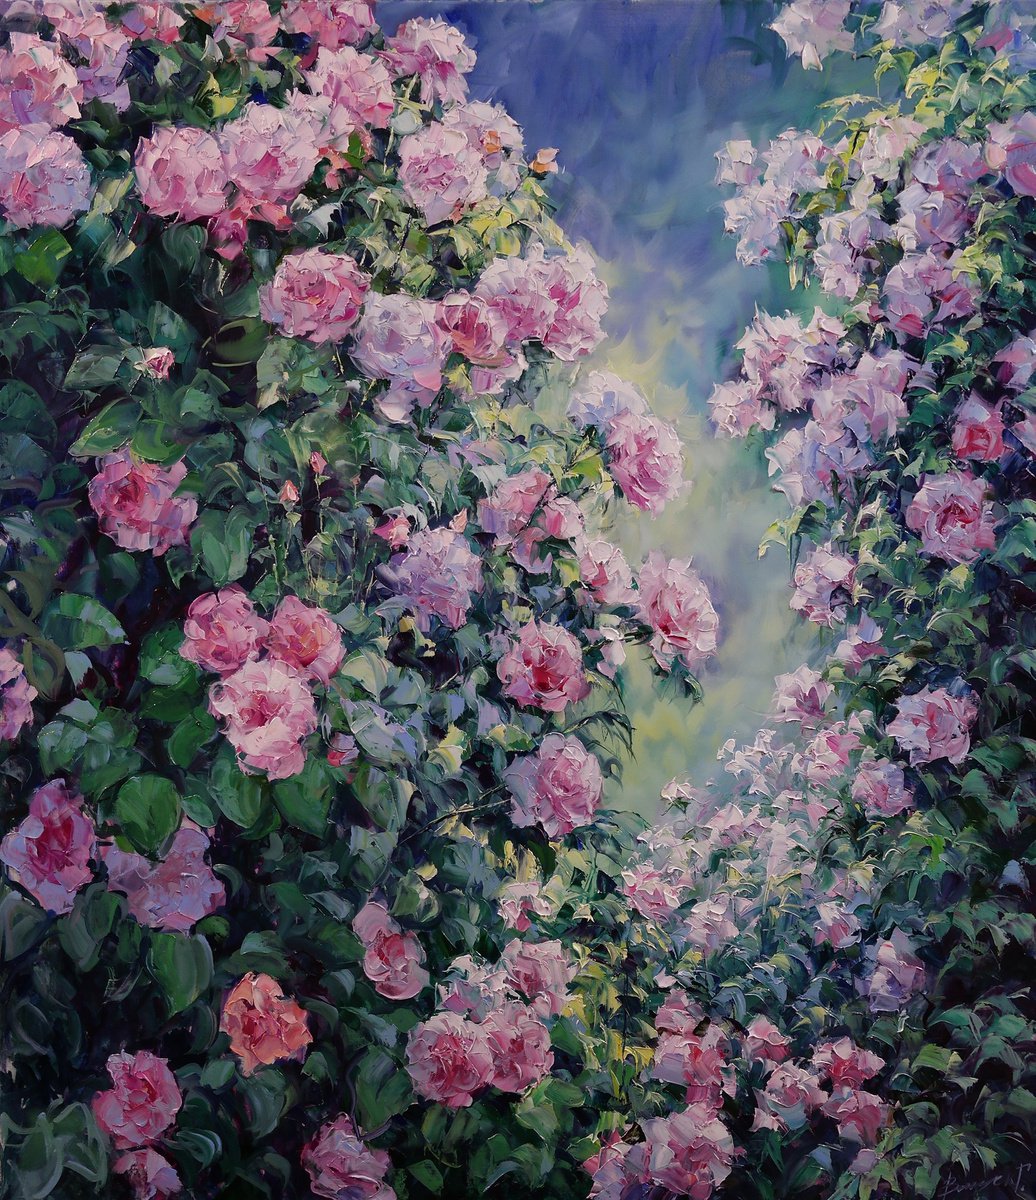 Roses by Gennady Vylusk